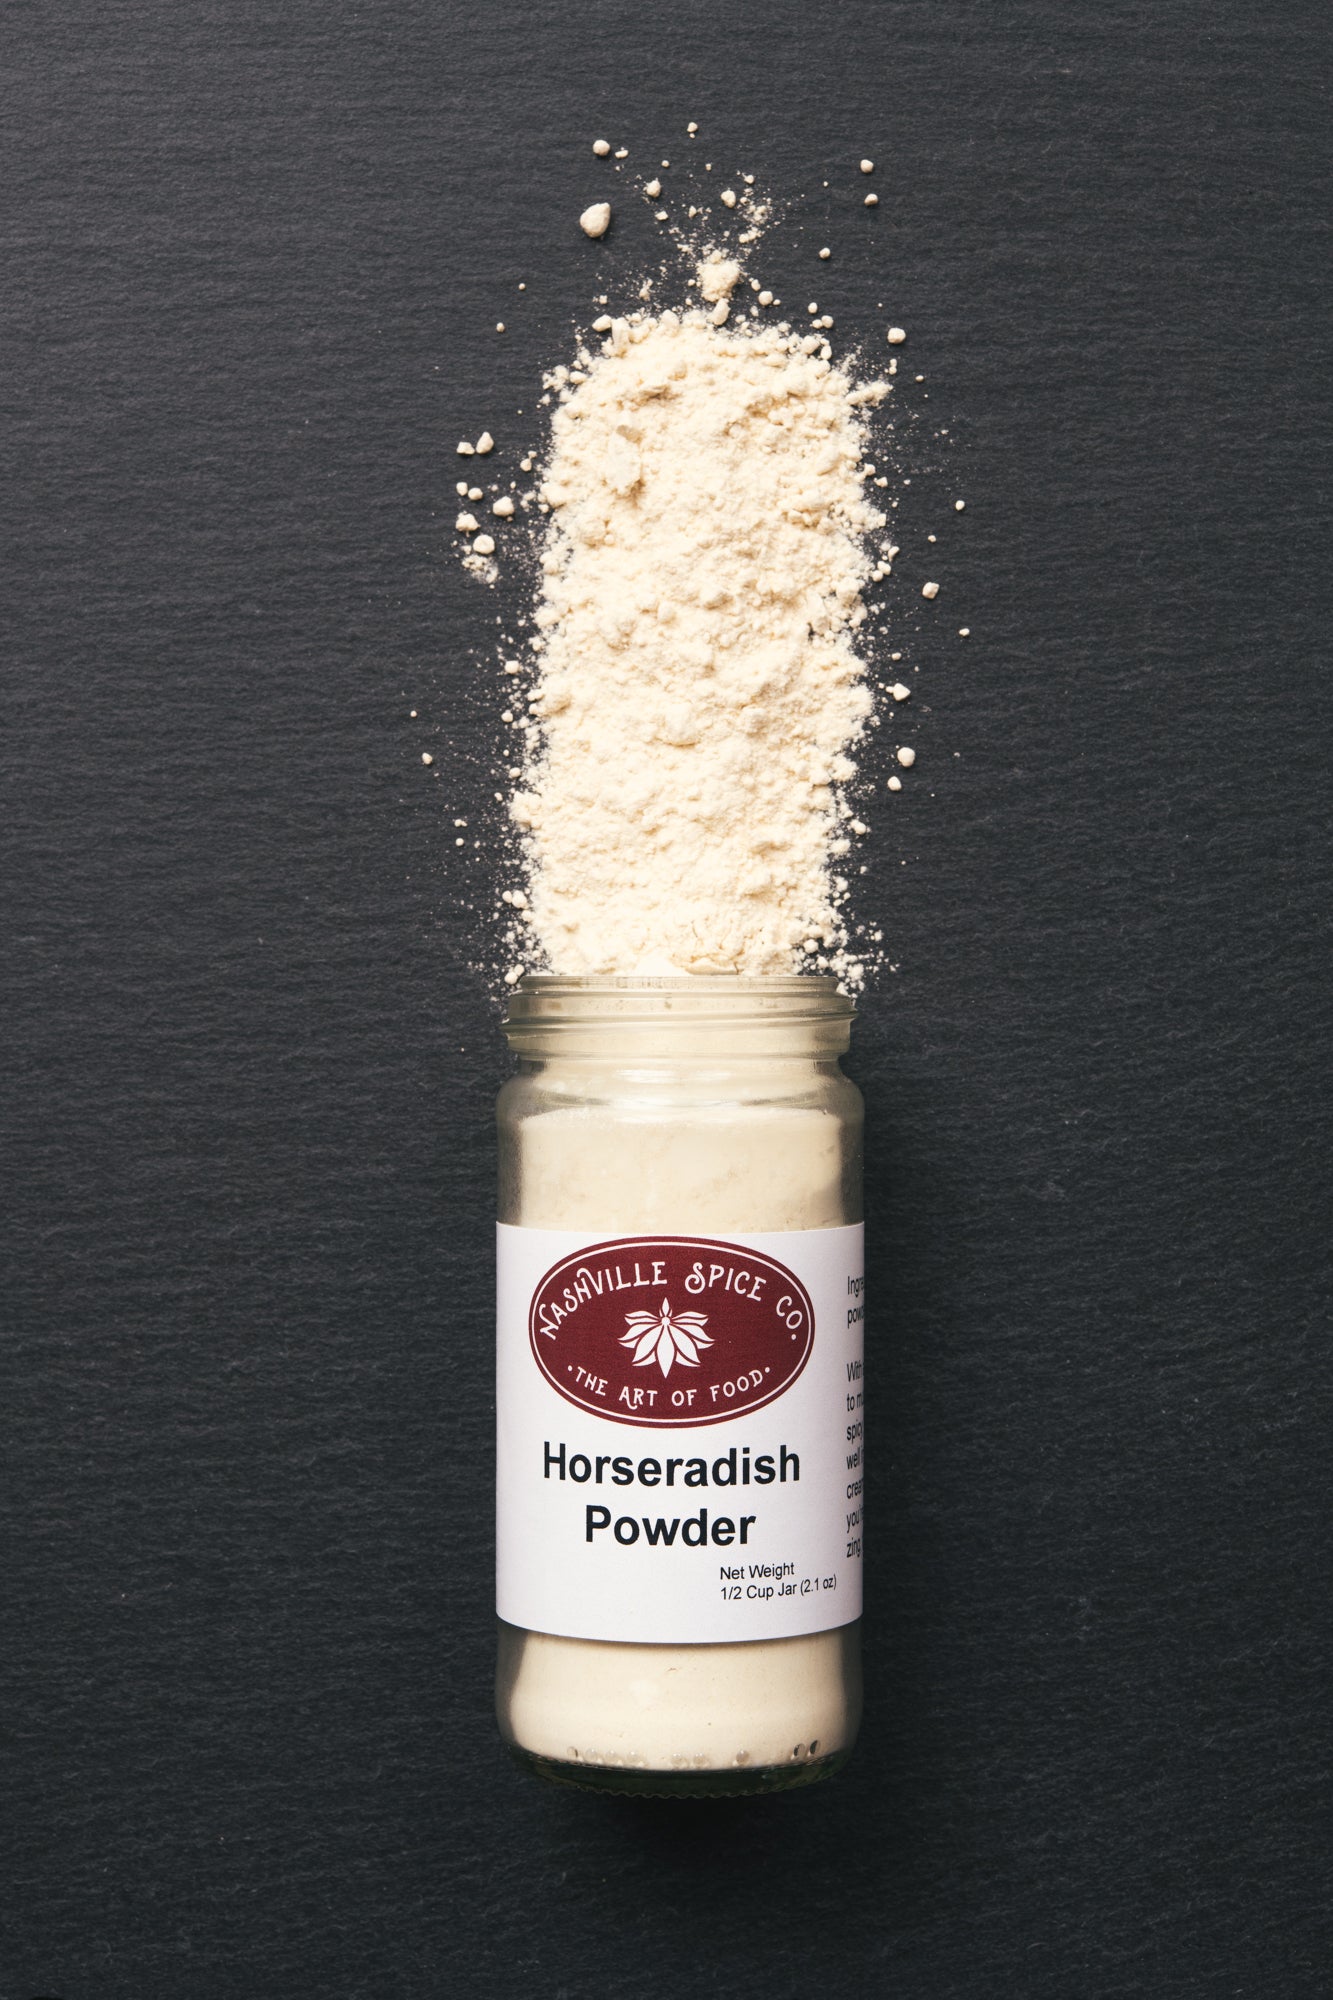 Horseradish Root Powder